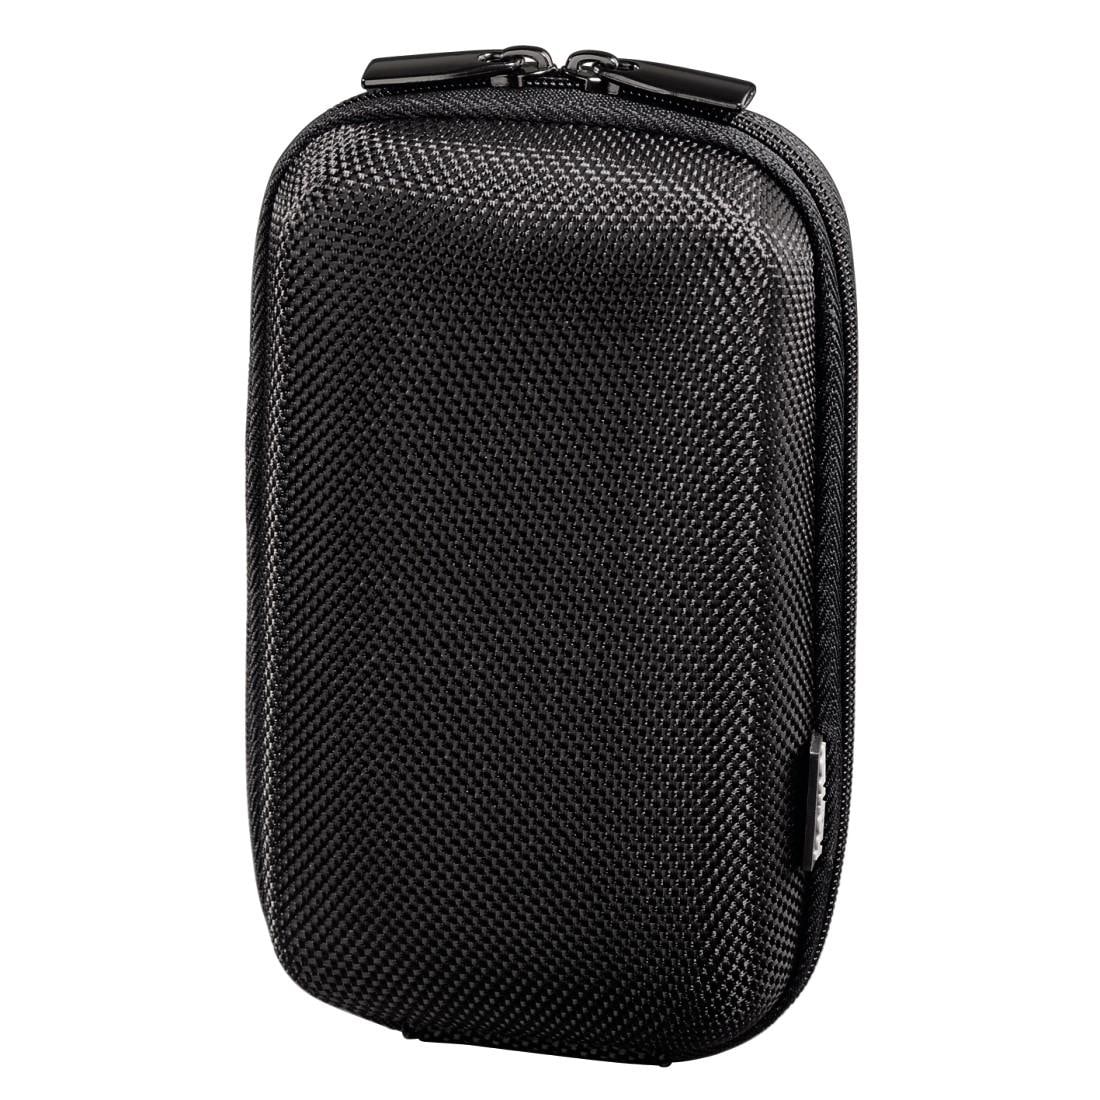 Kameratasche »Hardcase Tasche für Kamera, Schwarz«, Innenmaße 7x4x12,5 cm